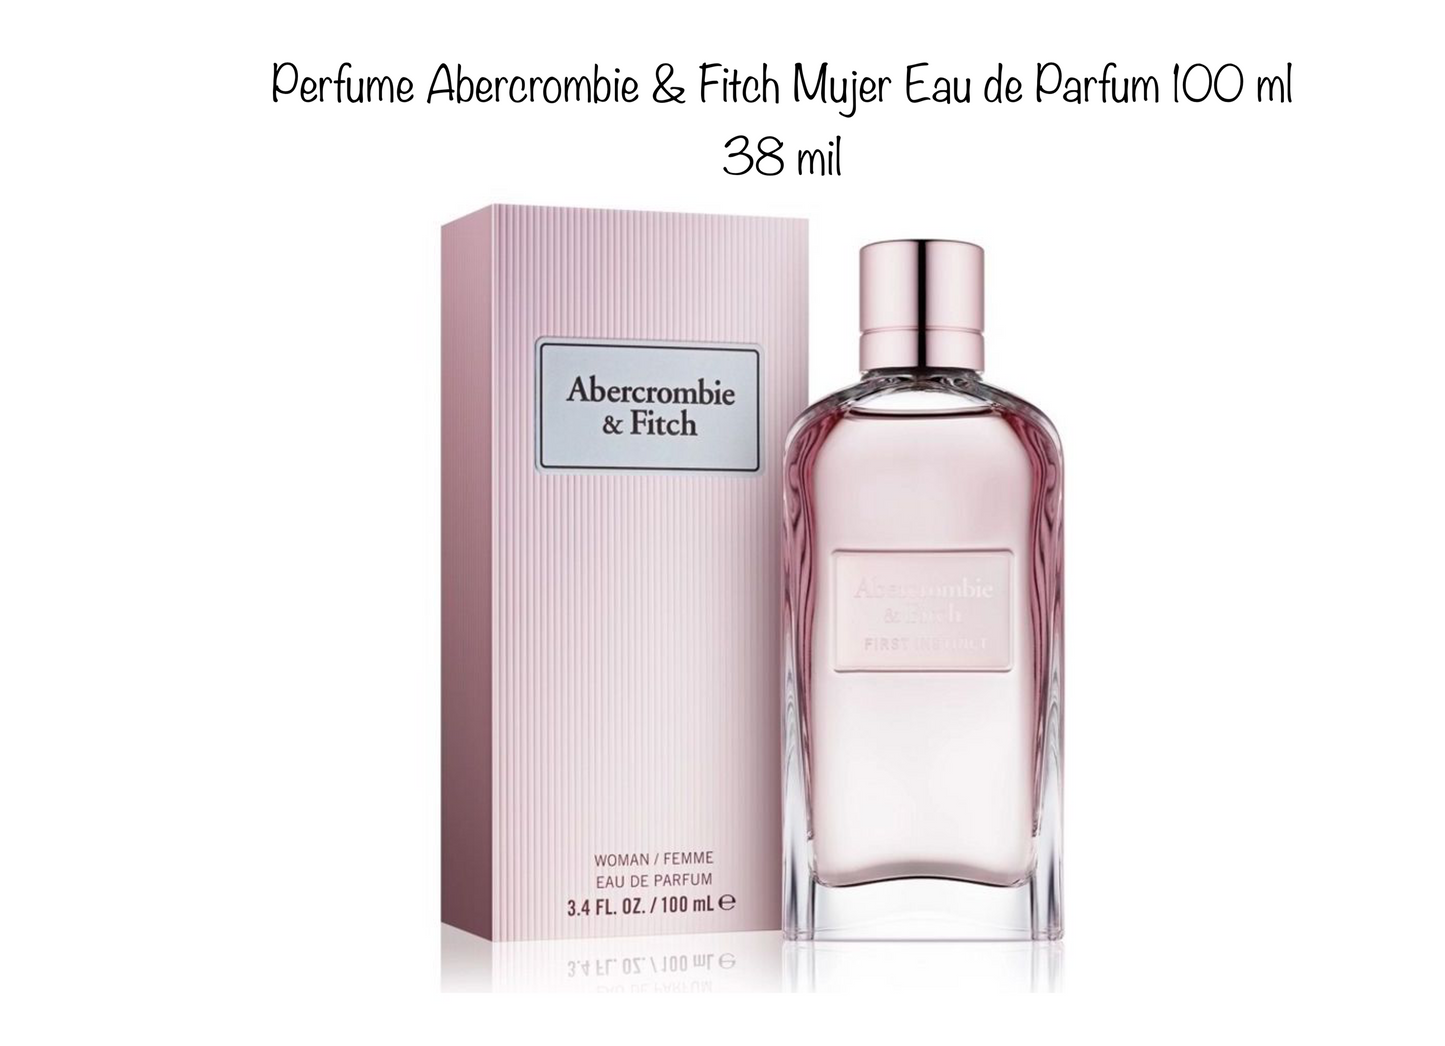 Perfume Abercrombie & Fitch Mujer Eau de Parfum 100 ml